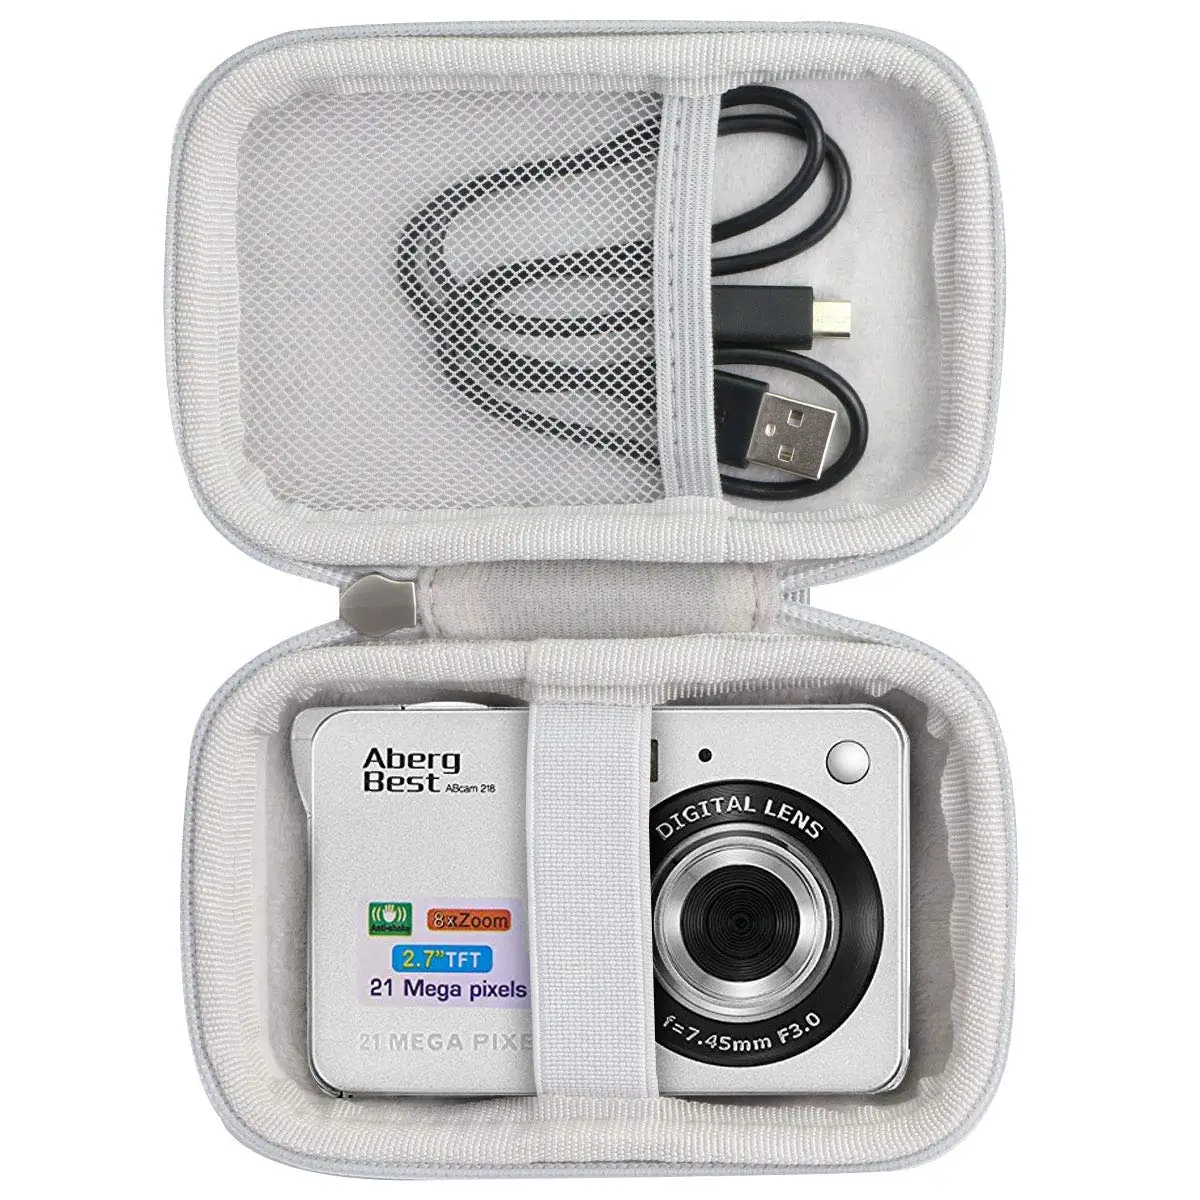 Пользовательский Eva маленький спортивный цифровой фотоаппарат водонепроницаемый протектор жесткий чехол для хранения для детской камеры